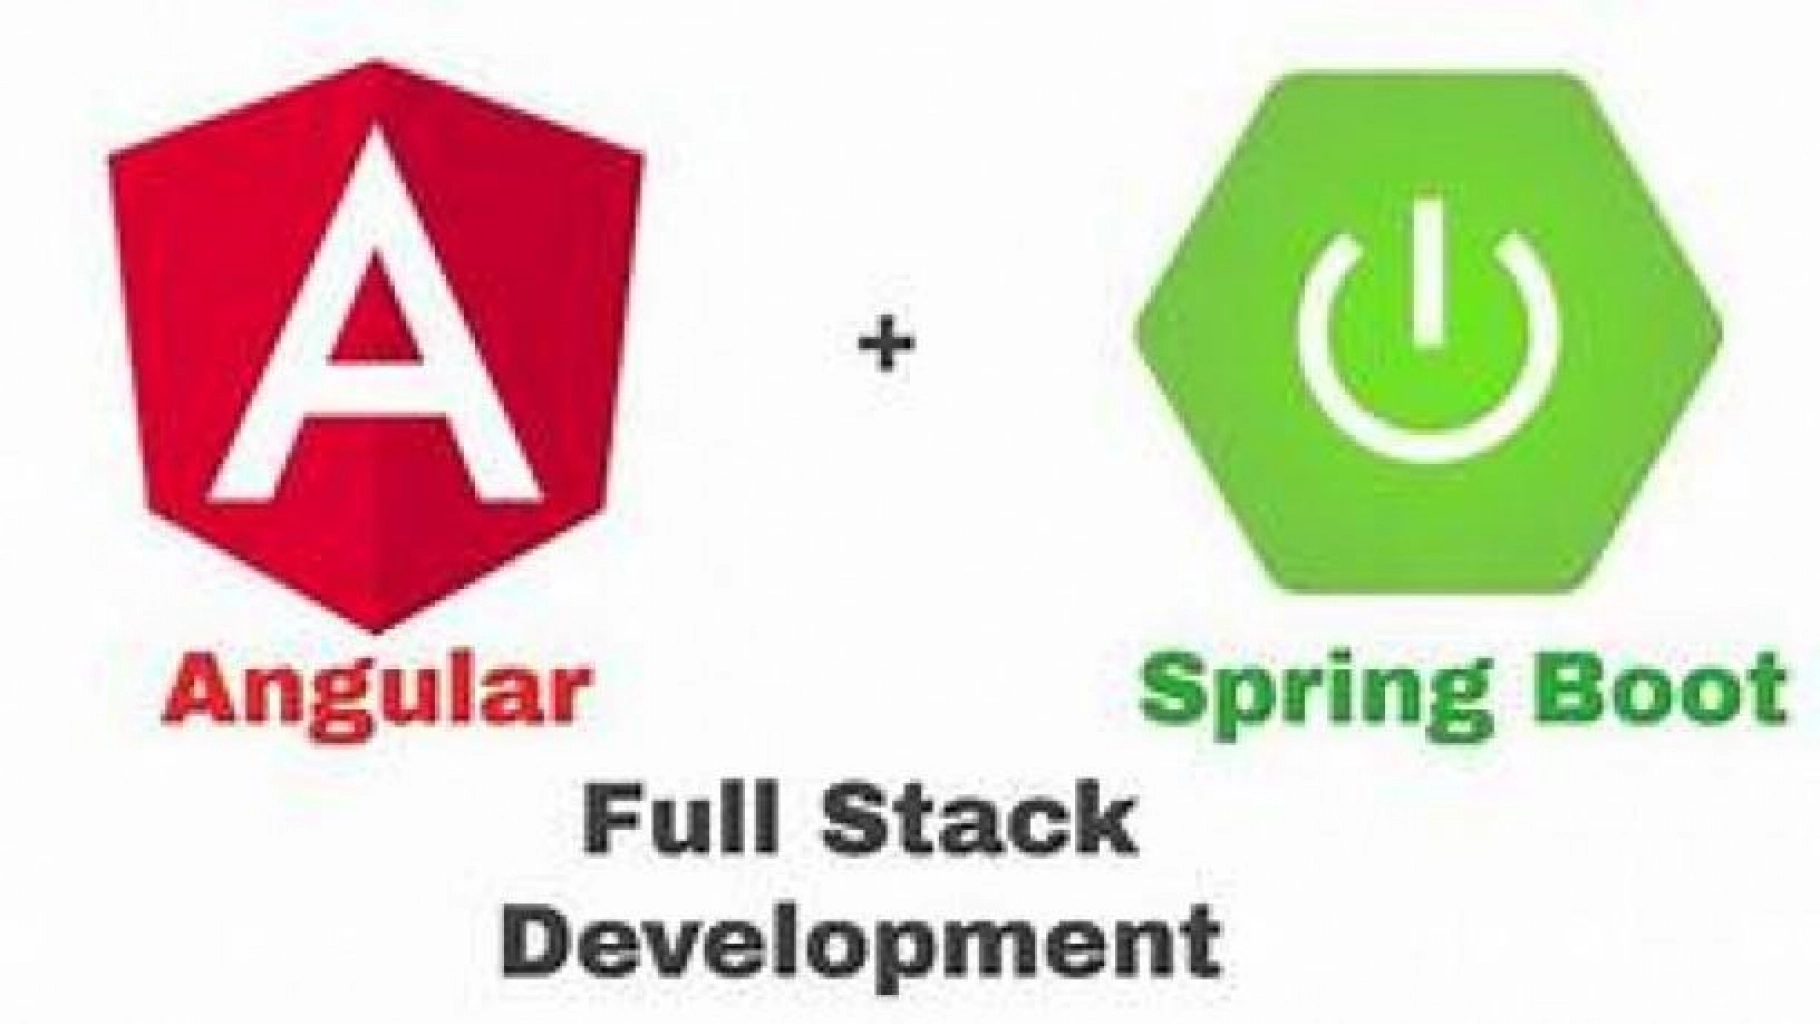 Formation_FullStack #Spring_Boot #Angular